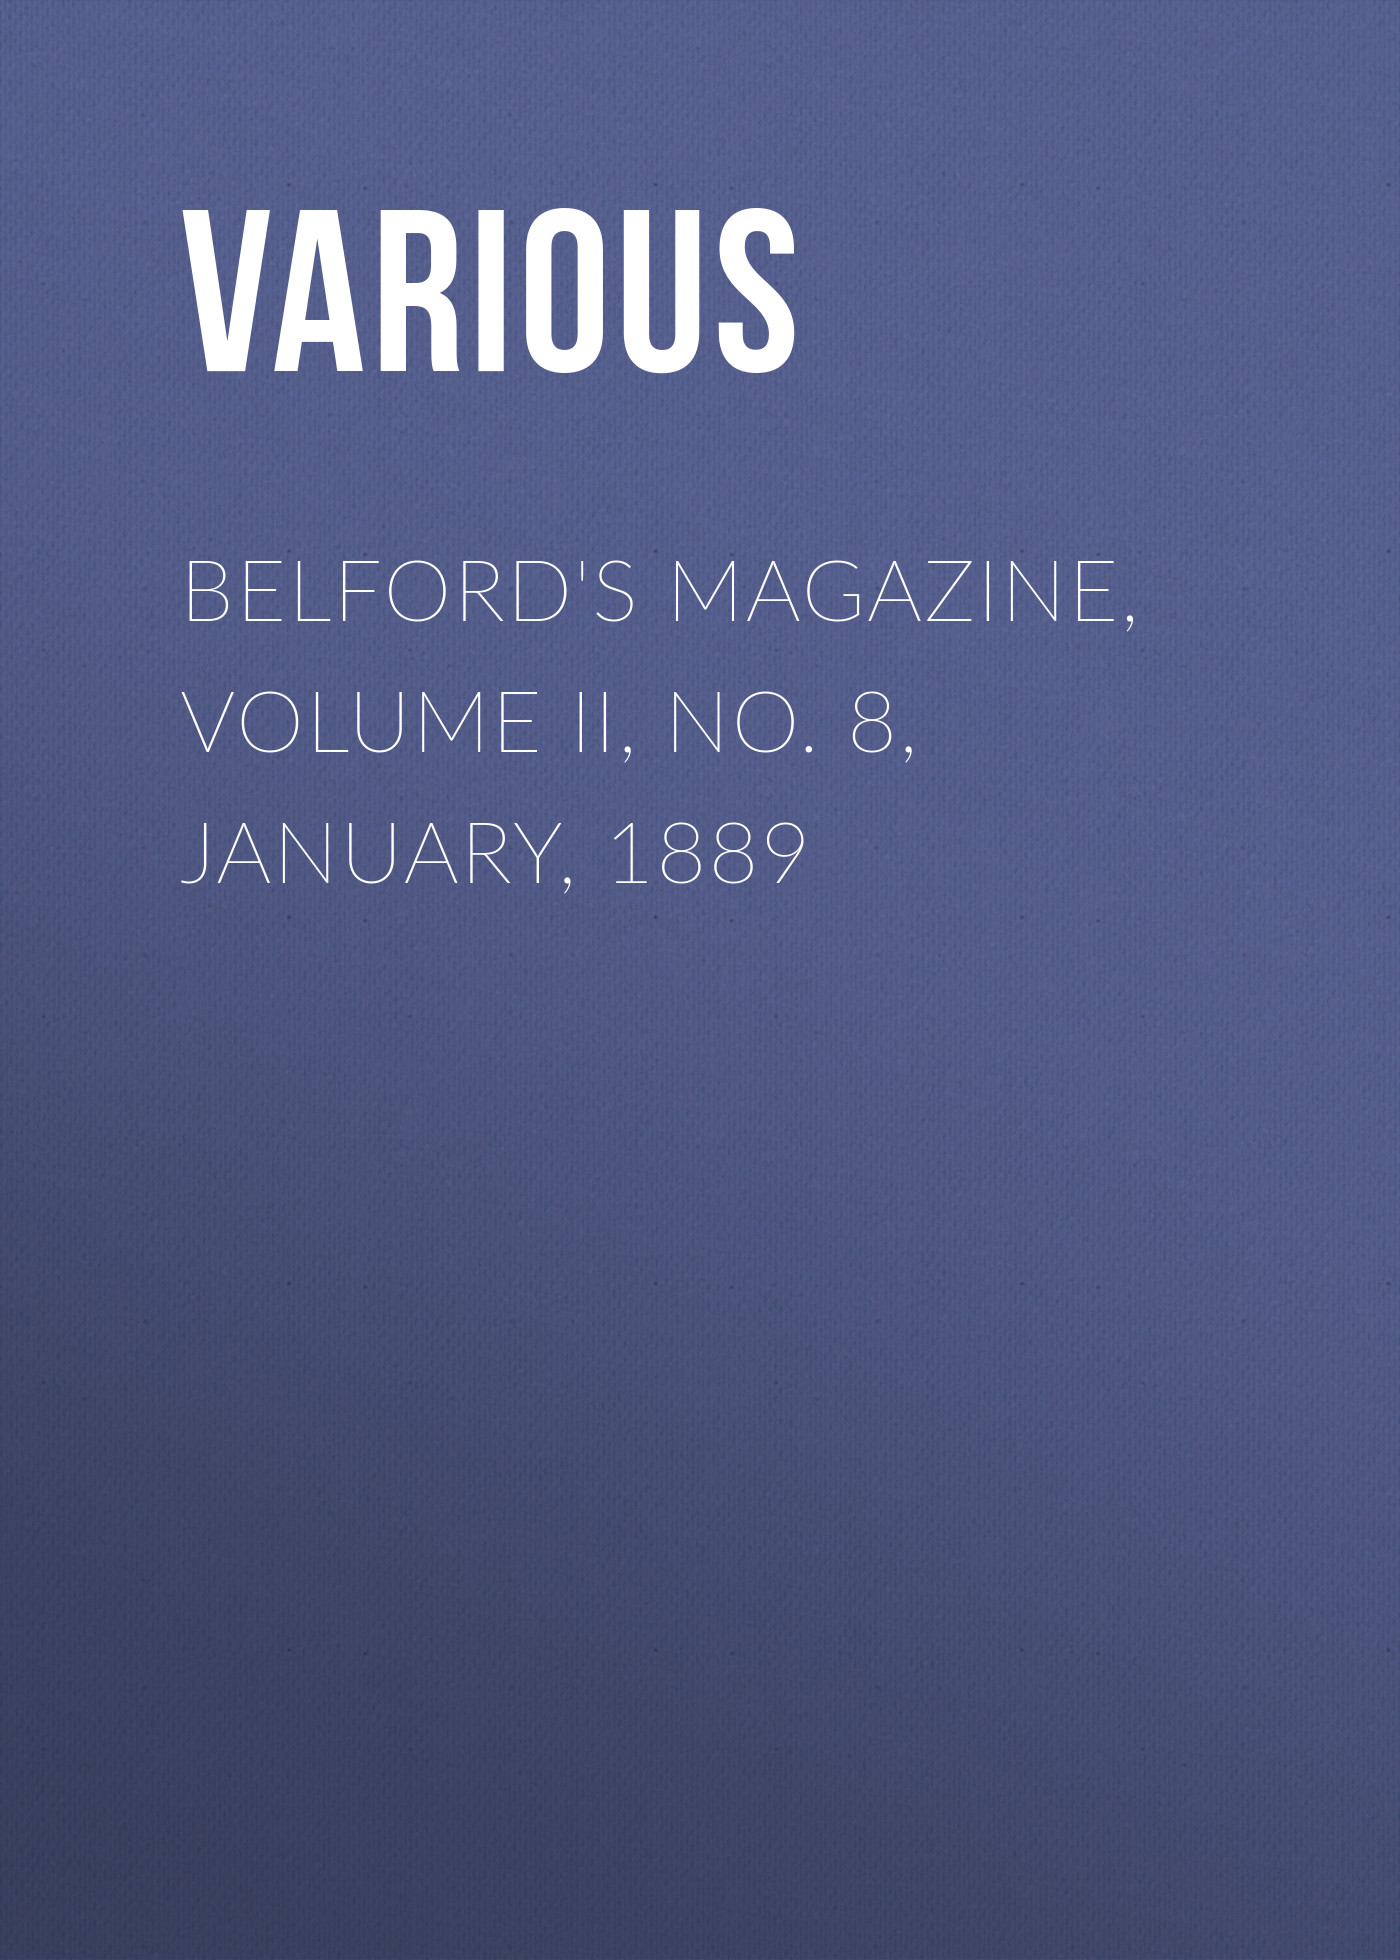 Книга Belford's Magazine, Volume II, No. 8, January, 1889 из серии , созданная  Various, может относится к жанру Журналы, Зарубежная образовательная литература. Стоимость электронной книги Belford's Magazine, Volume II, No. 8, January, 1889 с идентификатором 25570775 составляет 0 руб.